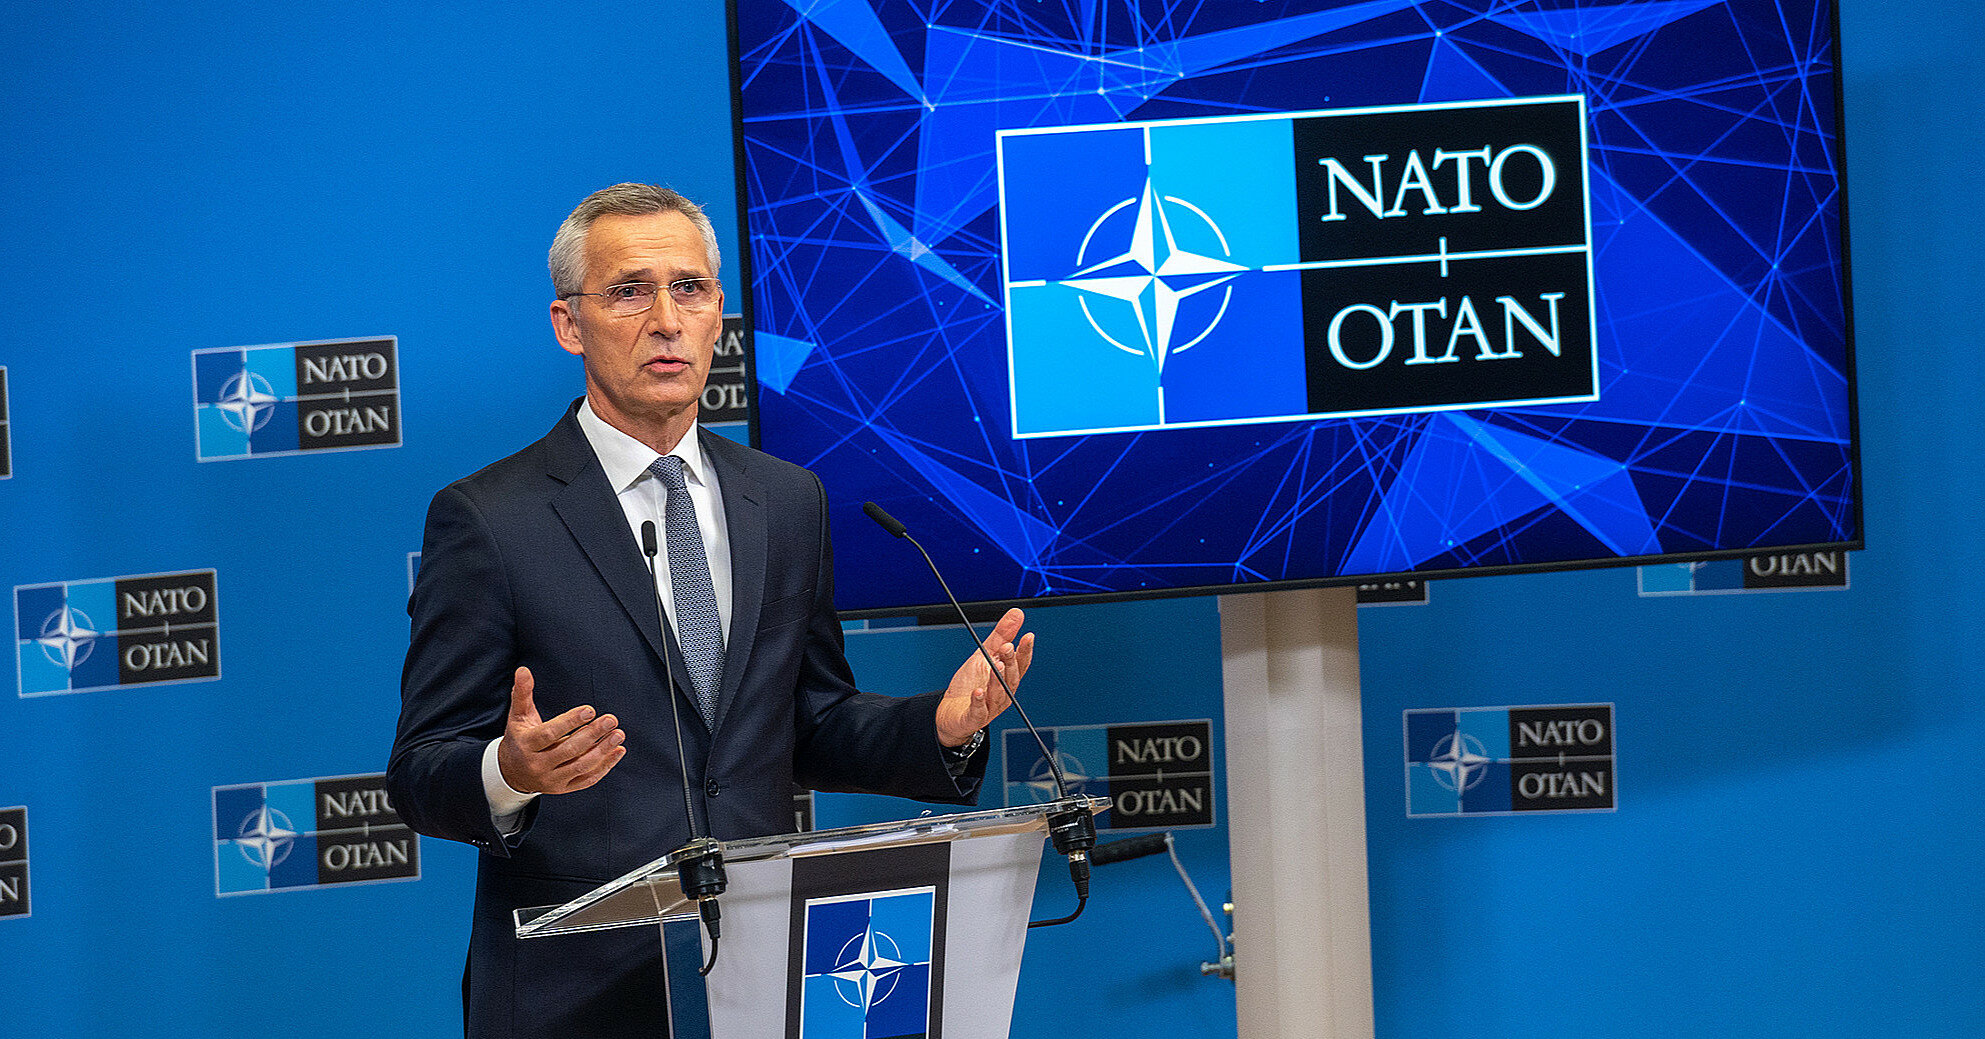 НАТО не пойдет на компромиссы с РФ по членству Украины – Столтенберг